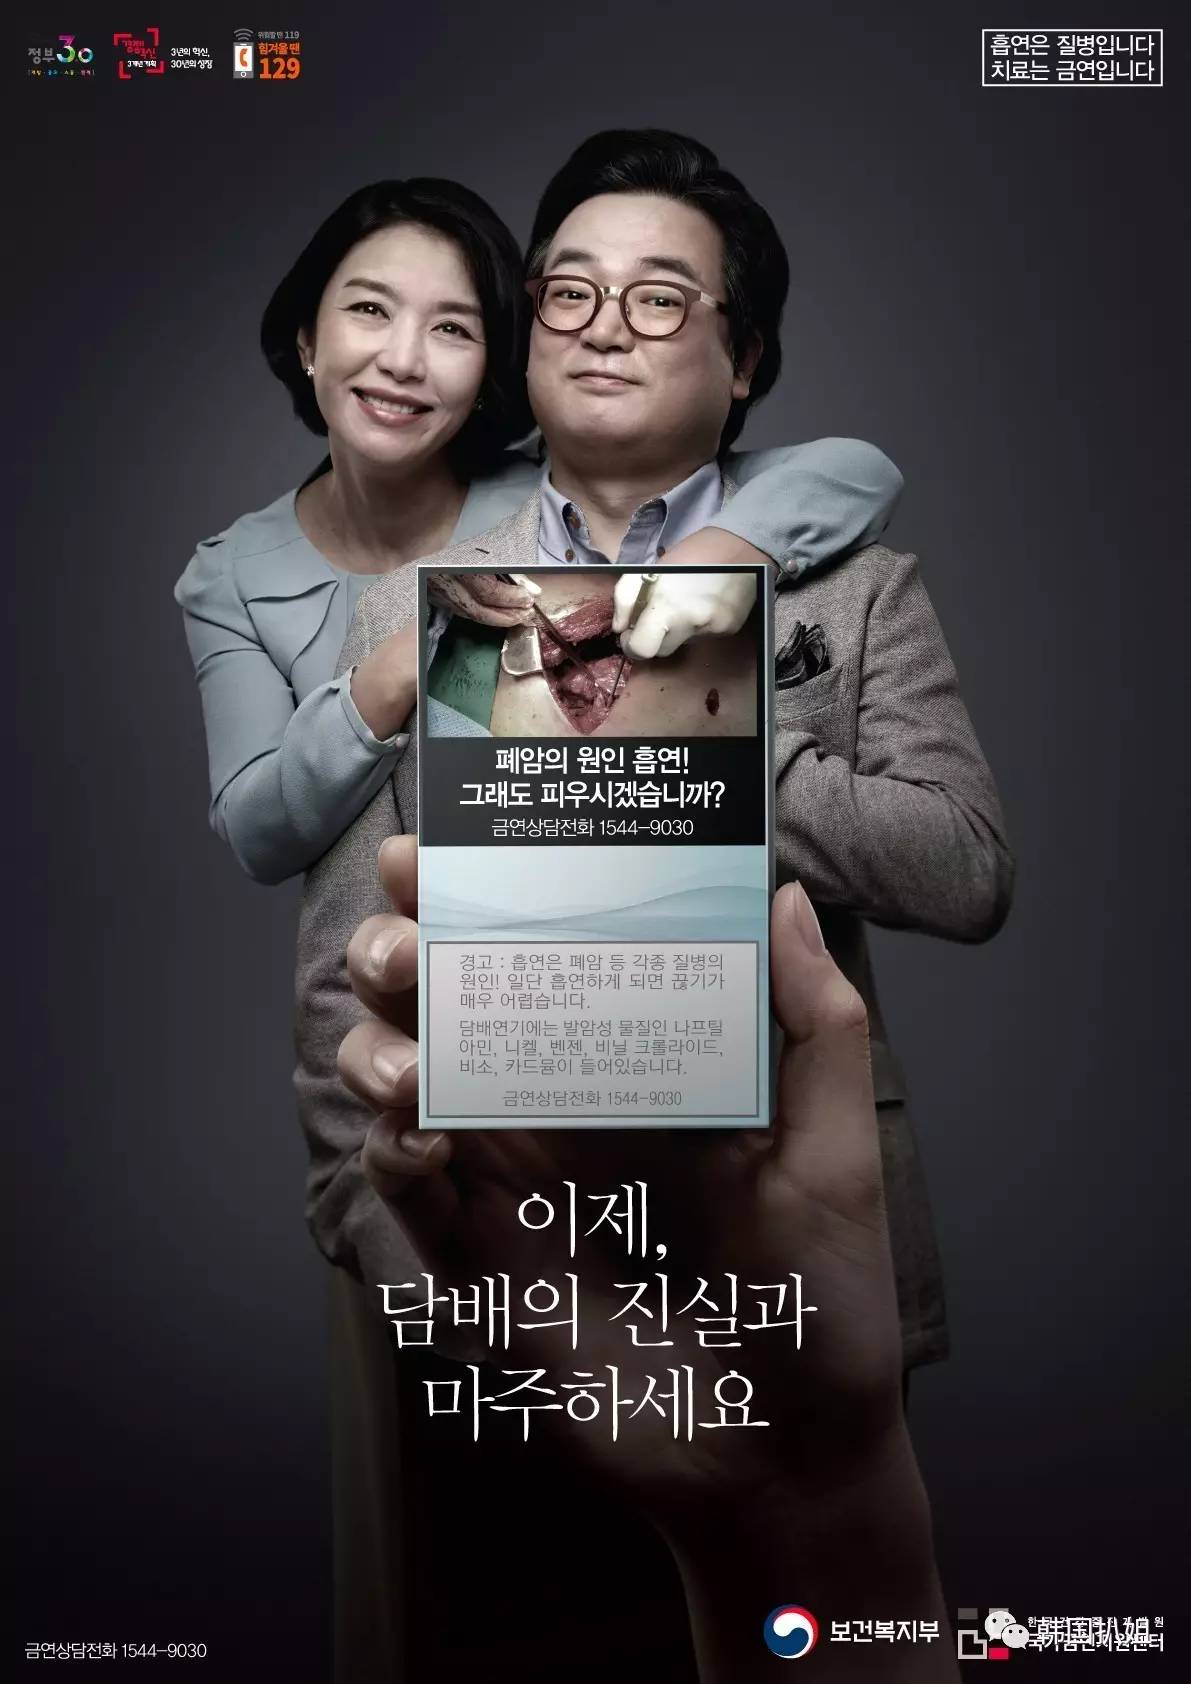 韩国震撼人心的公益广告:今天你咎由自取的疾病,是吸烟